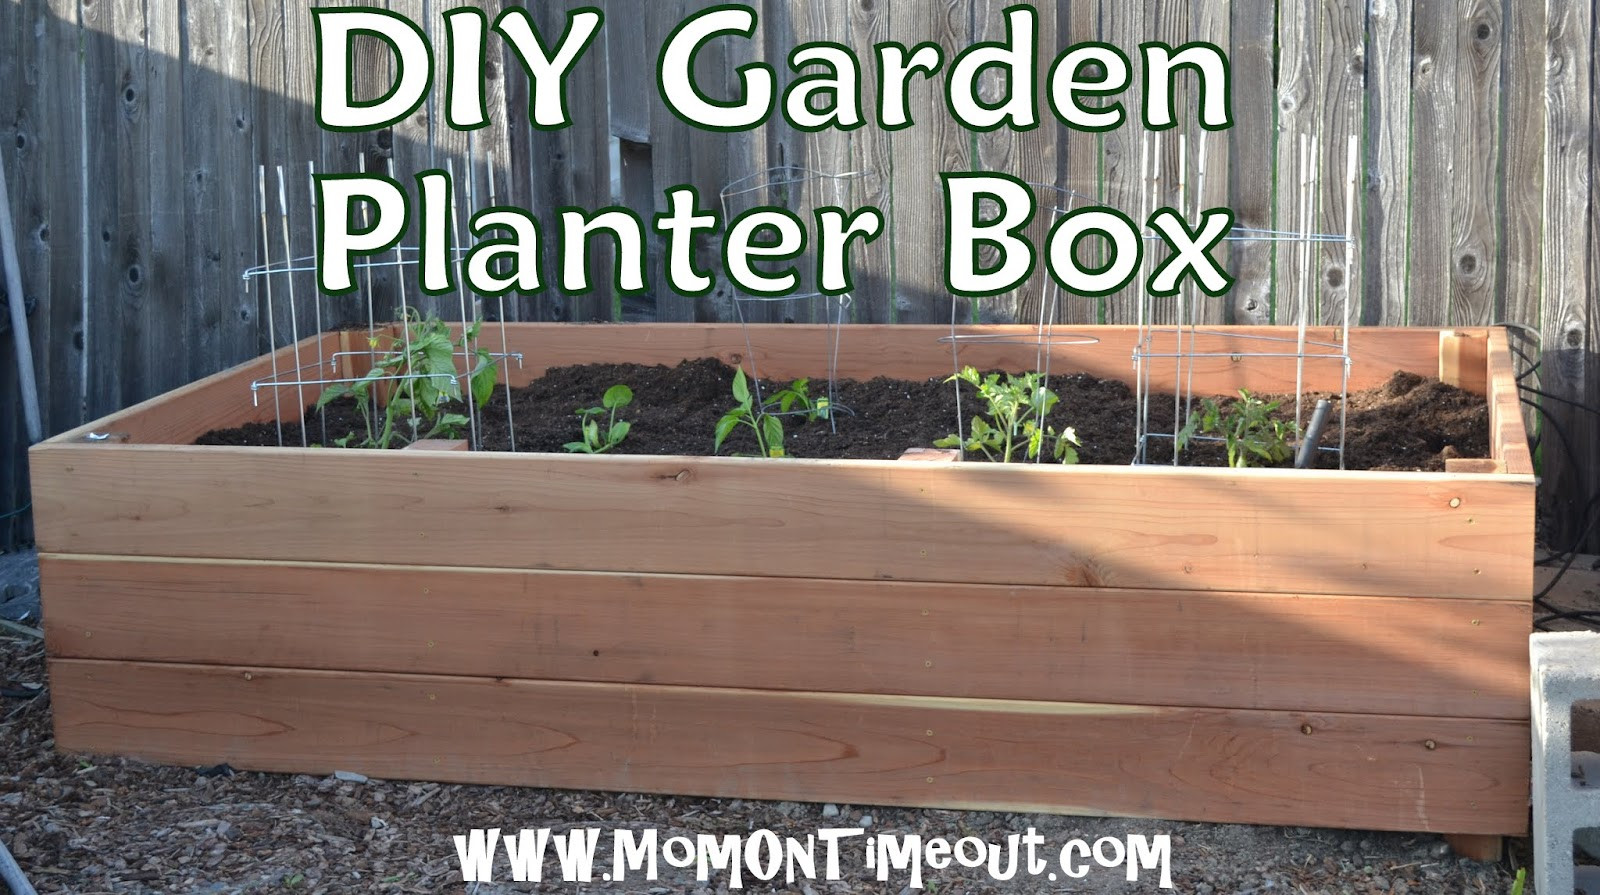 Best ideas about Garden Planter Boxes DIY
. Save or Pin DIY Garden Planter Box Tutorial Now.